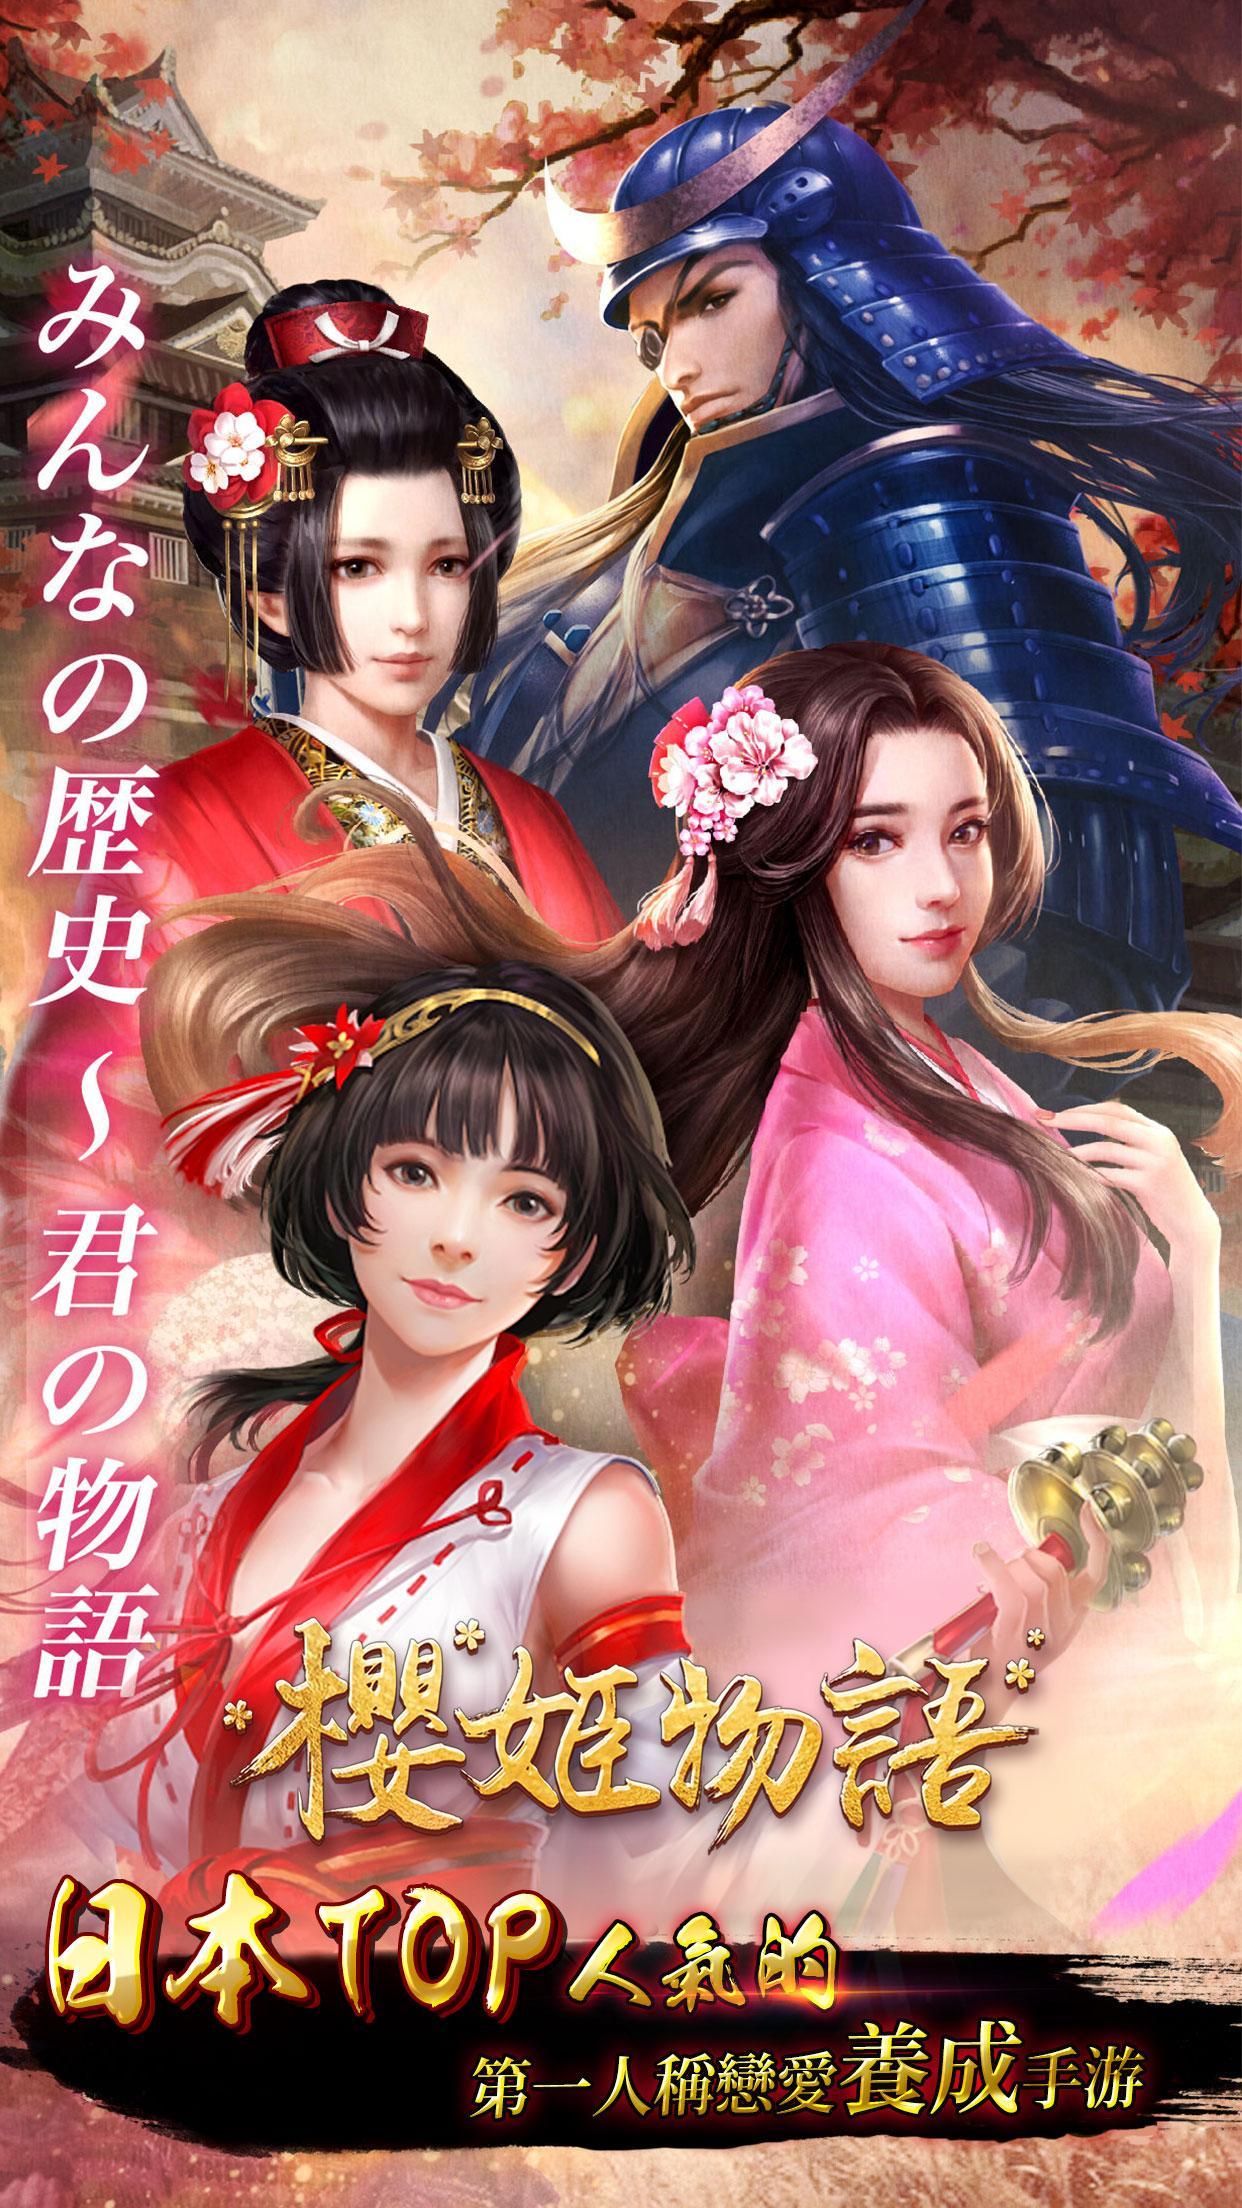 Screenshot 1 of Sakura Hime Monogatari - Мобильные игры о культивировании японской любви 1.0.1